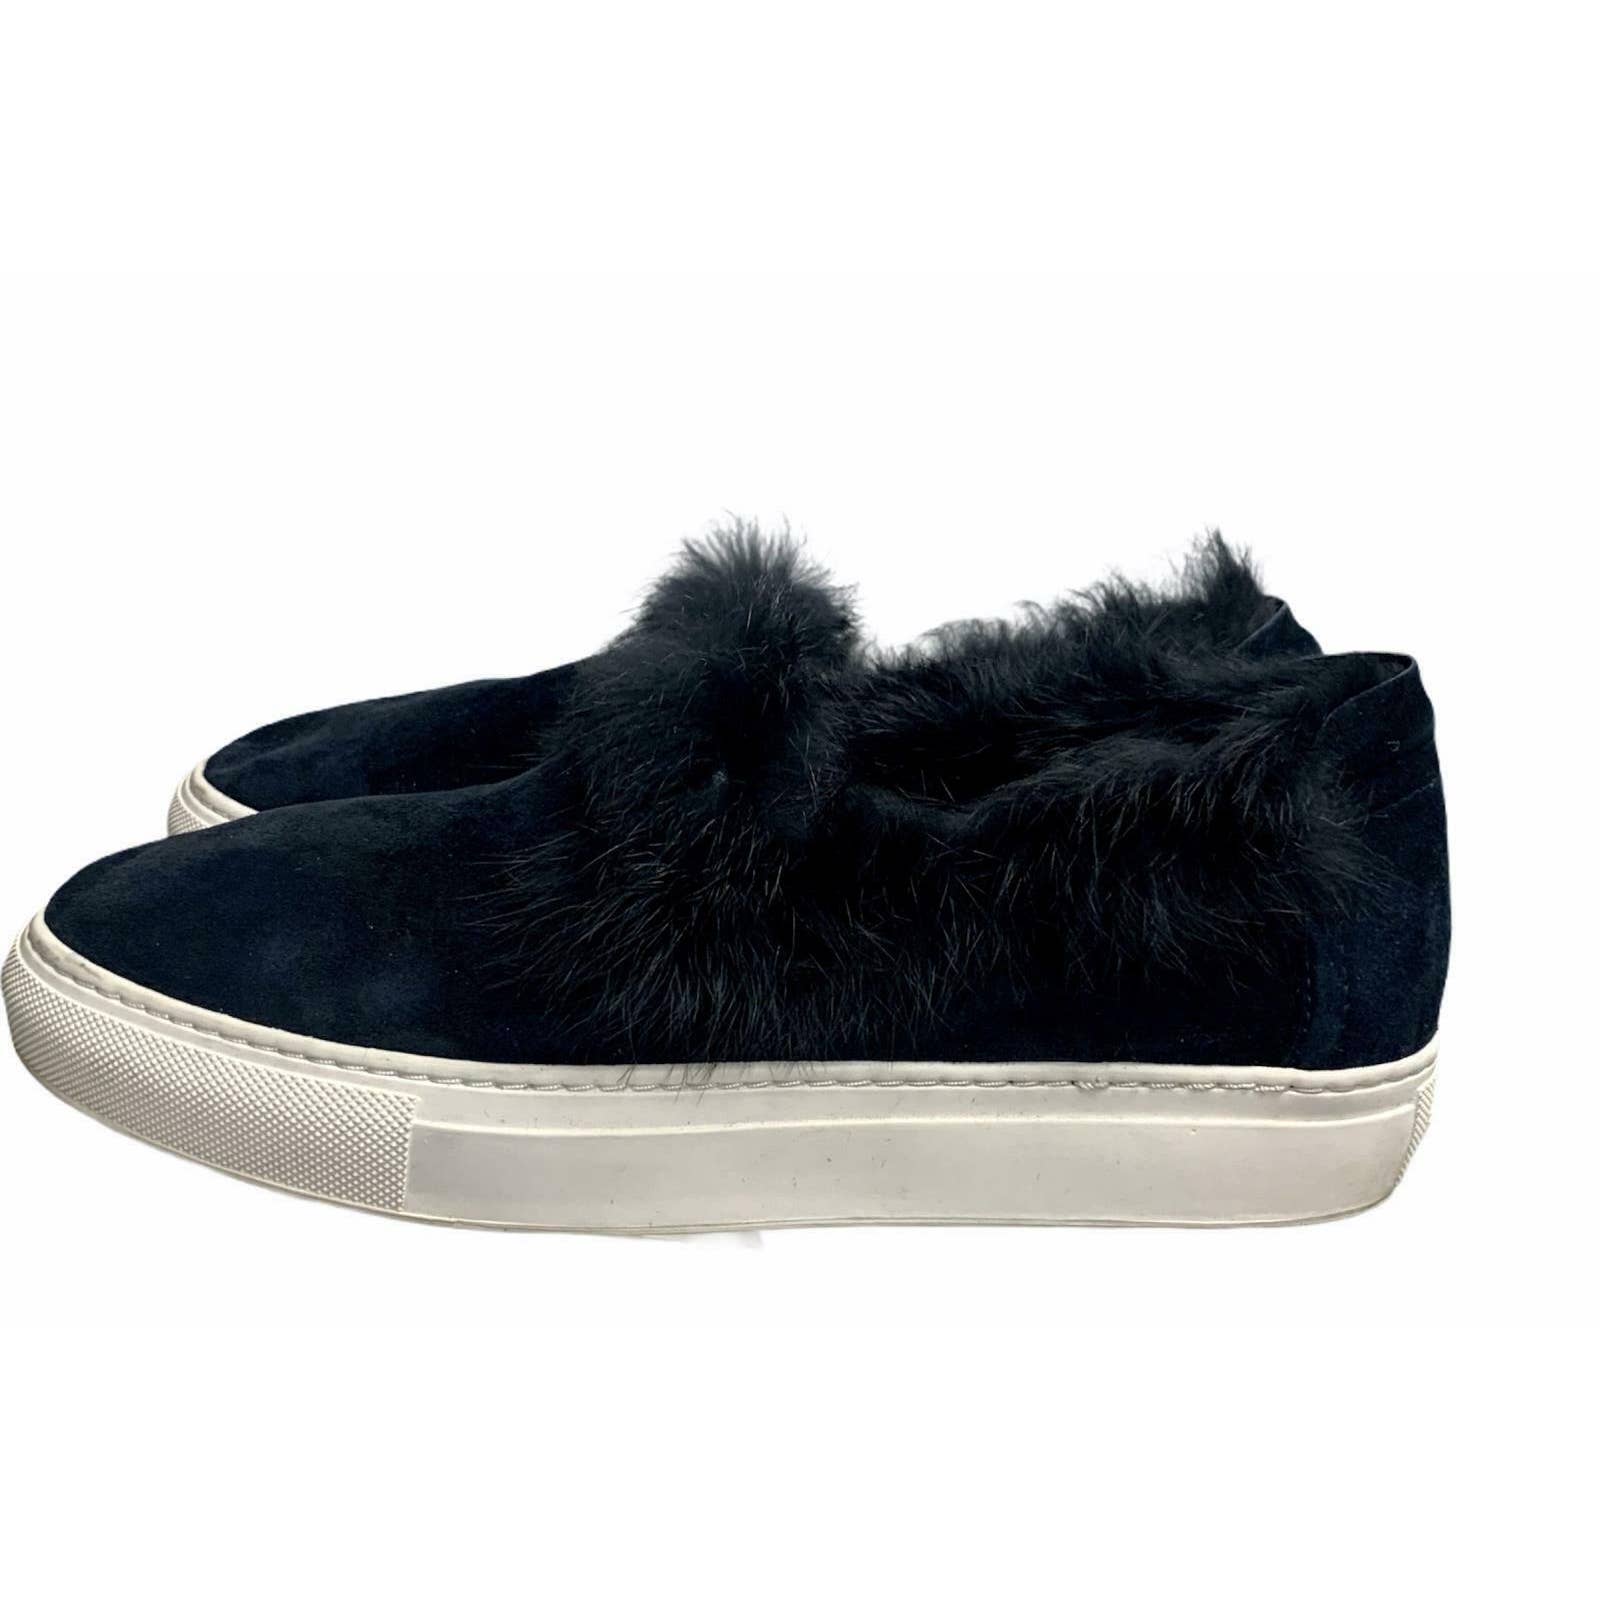 Rachel Zoe Fur Trim Slip on Sneakers Trainers Flats Comfort 7 Navy - Premium  from Rachel Zoe - Just $37.0! Shop now at Finds For You